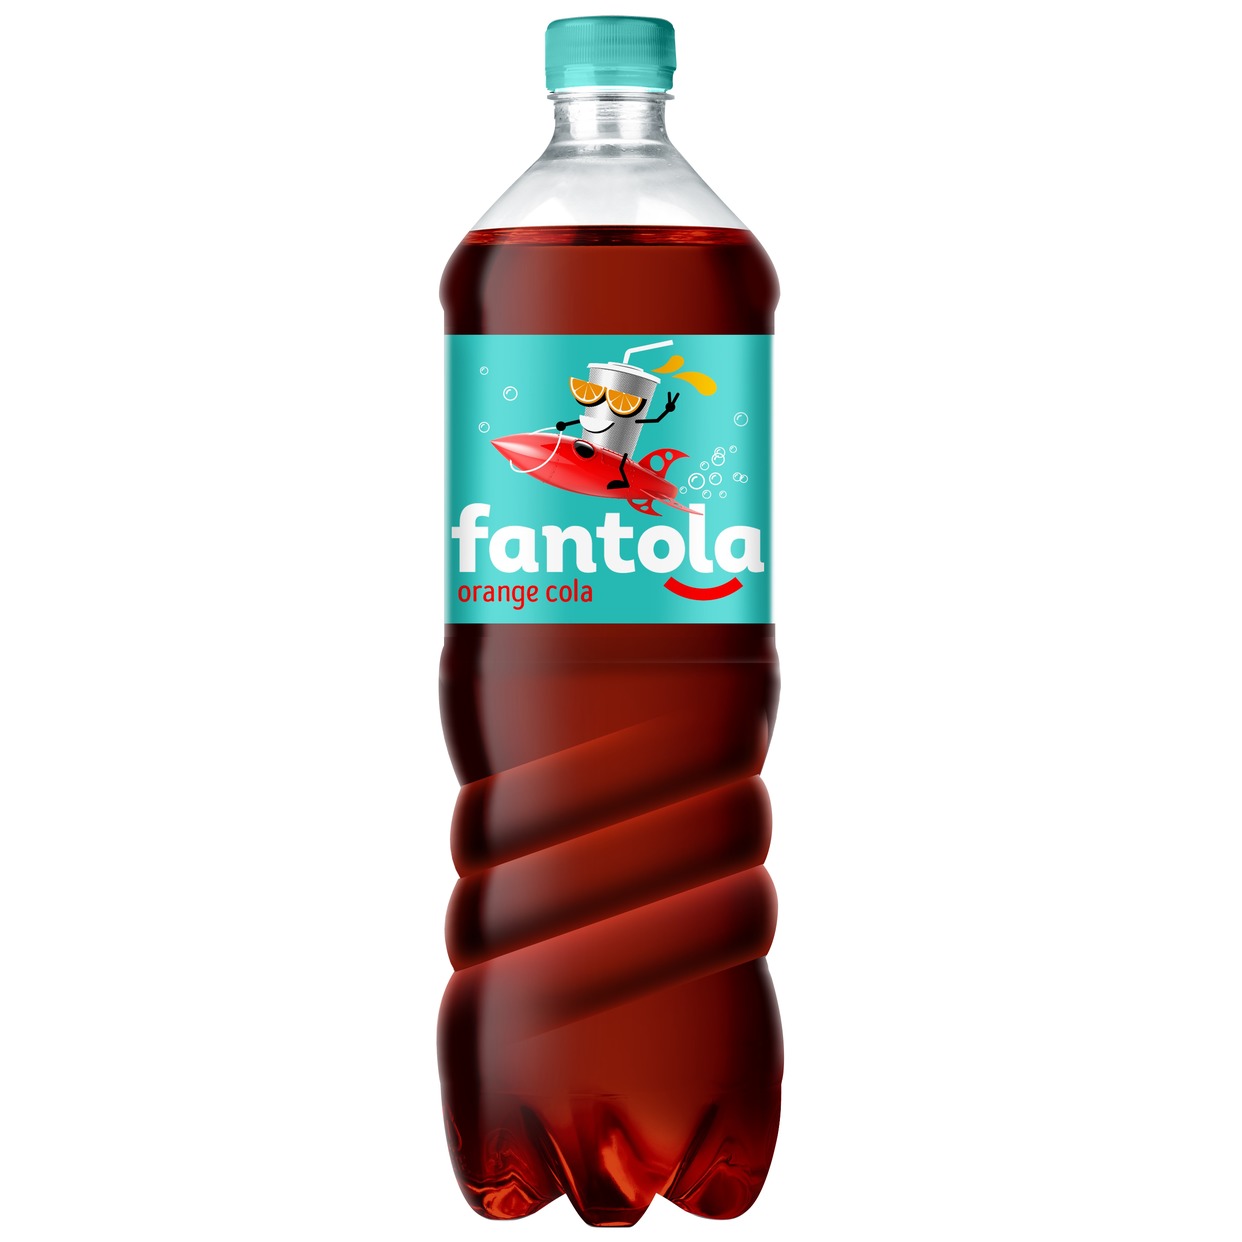 Напиток "FANTOLA ORANGE COLA" «Фантола оранж кола» б/алк.сил/газ.1,0 л ПЭТ по акции в Пятерочке